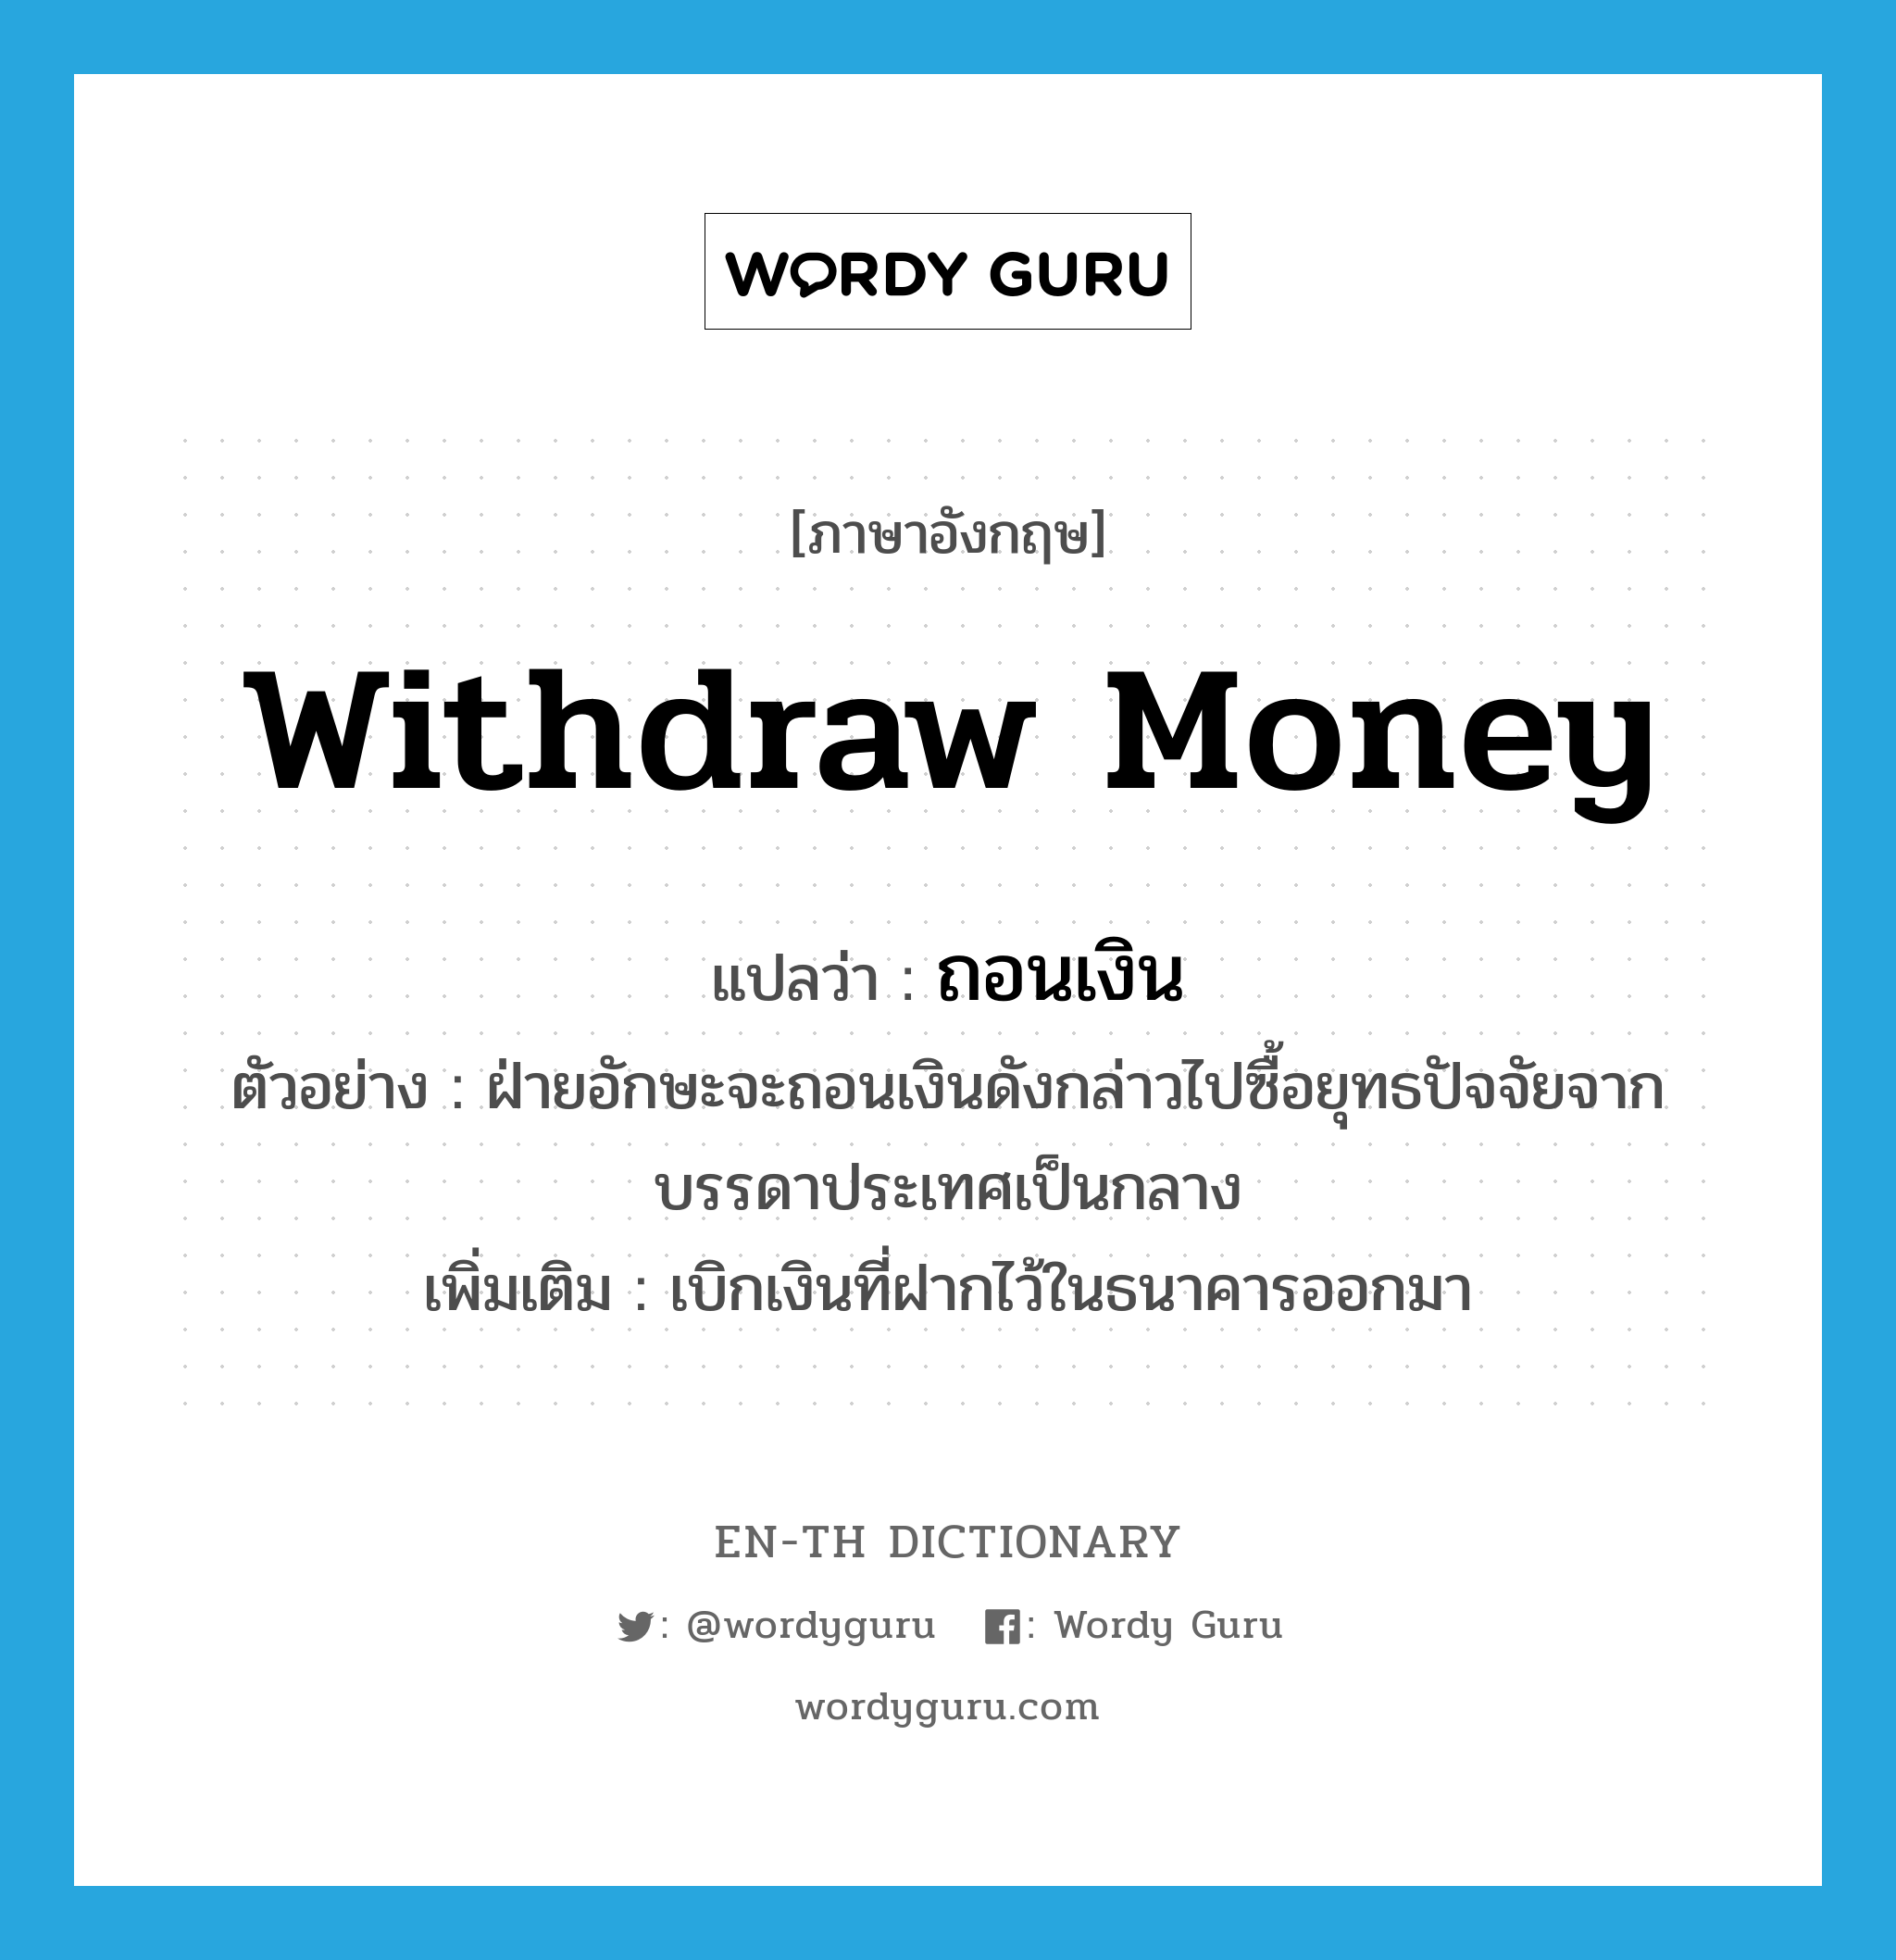 withdraw money แปลว่า?, คำศัพท์ภาษาอังกฤษ withdraw money แปลว่า ถอนเงิน ประเภท V ตัวอย่าง ฝ่ายอักษะจะถอนเงินดังกล่าวไปซื้อยุทธปัจจัยจากบรรดาประเทศเป็นกลาง เพิ่มเติม เบิกเงินที่ฝากไว้ในธนาคารออกมา หมวด V